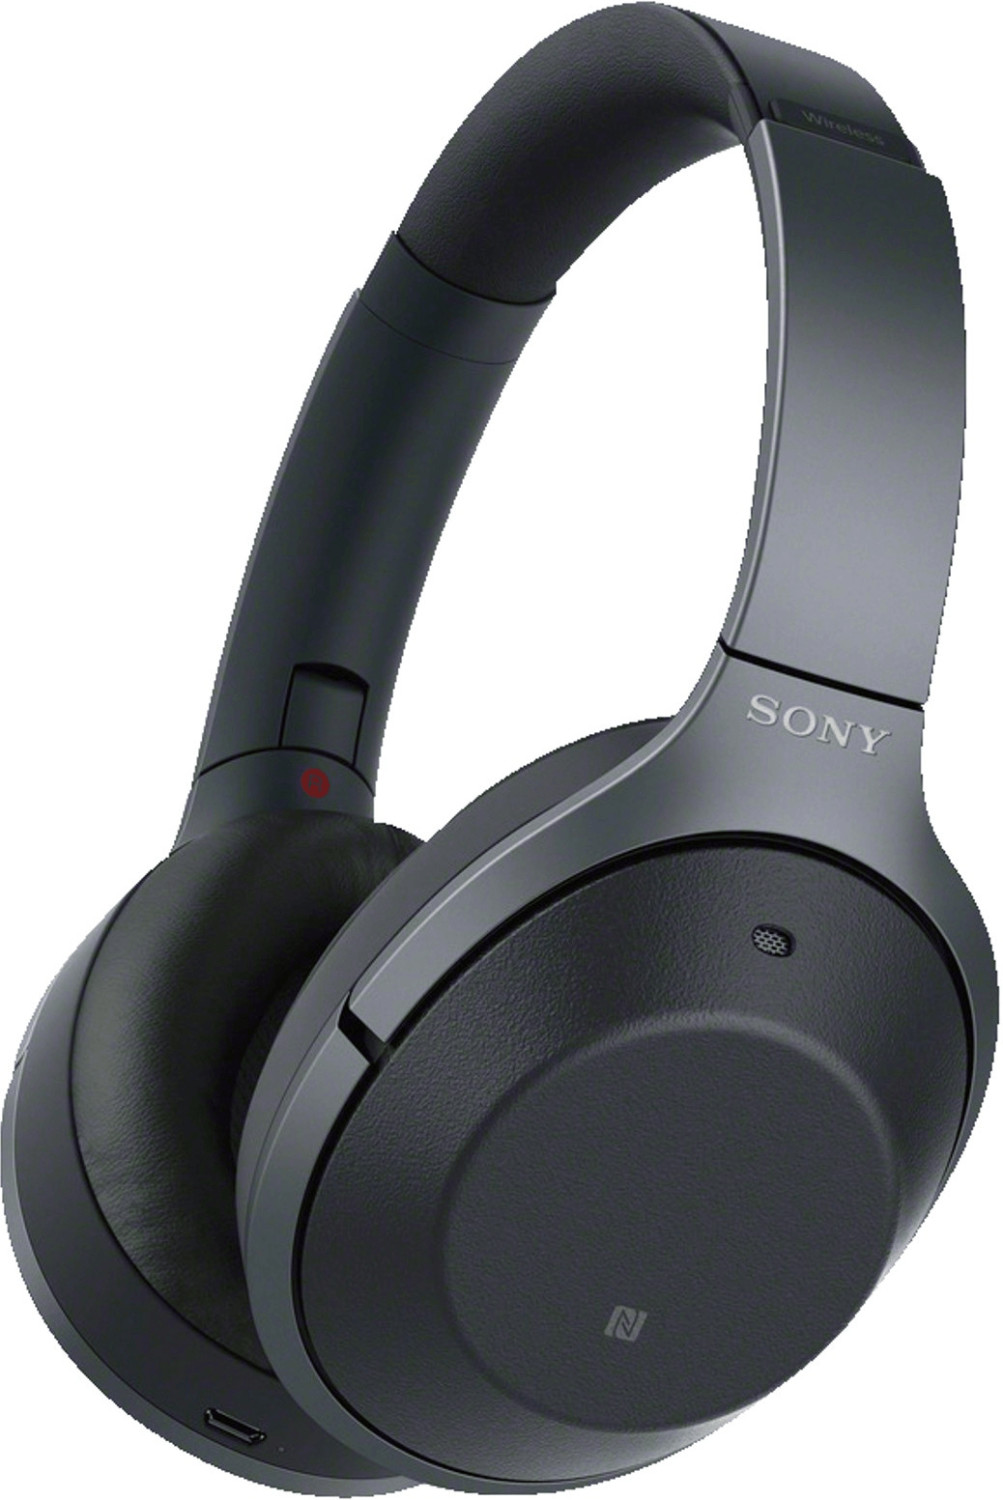 Sony WH-1000XM2 schwarz